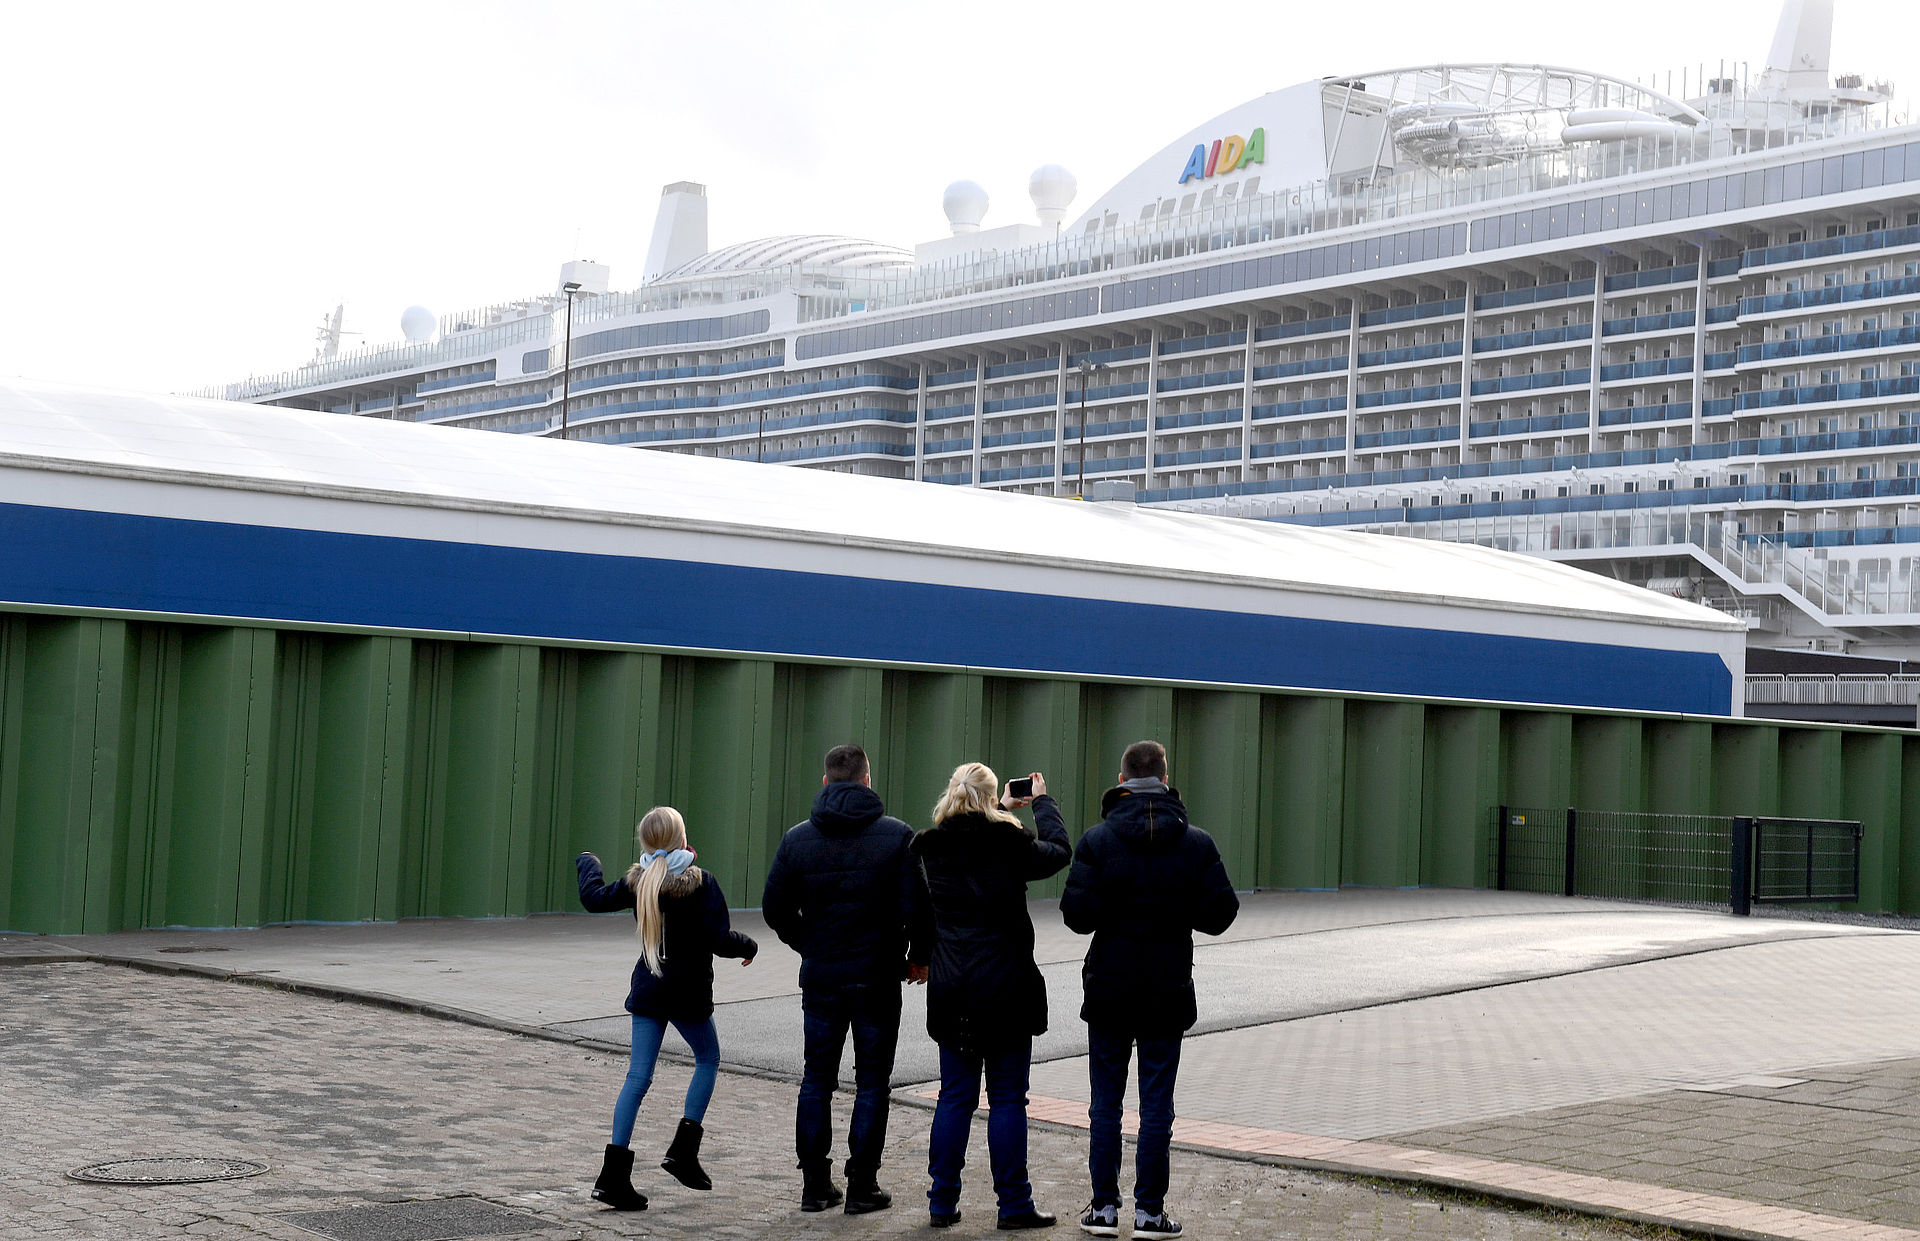 Im Vordergrund eine Gruppe Menschen/Familie, die ein Aida-Kreuzfahrtschiff fotografieren, links im Mittelgrund eine grüne Spundwand.